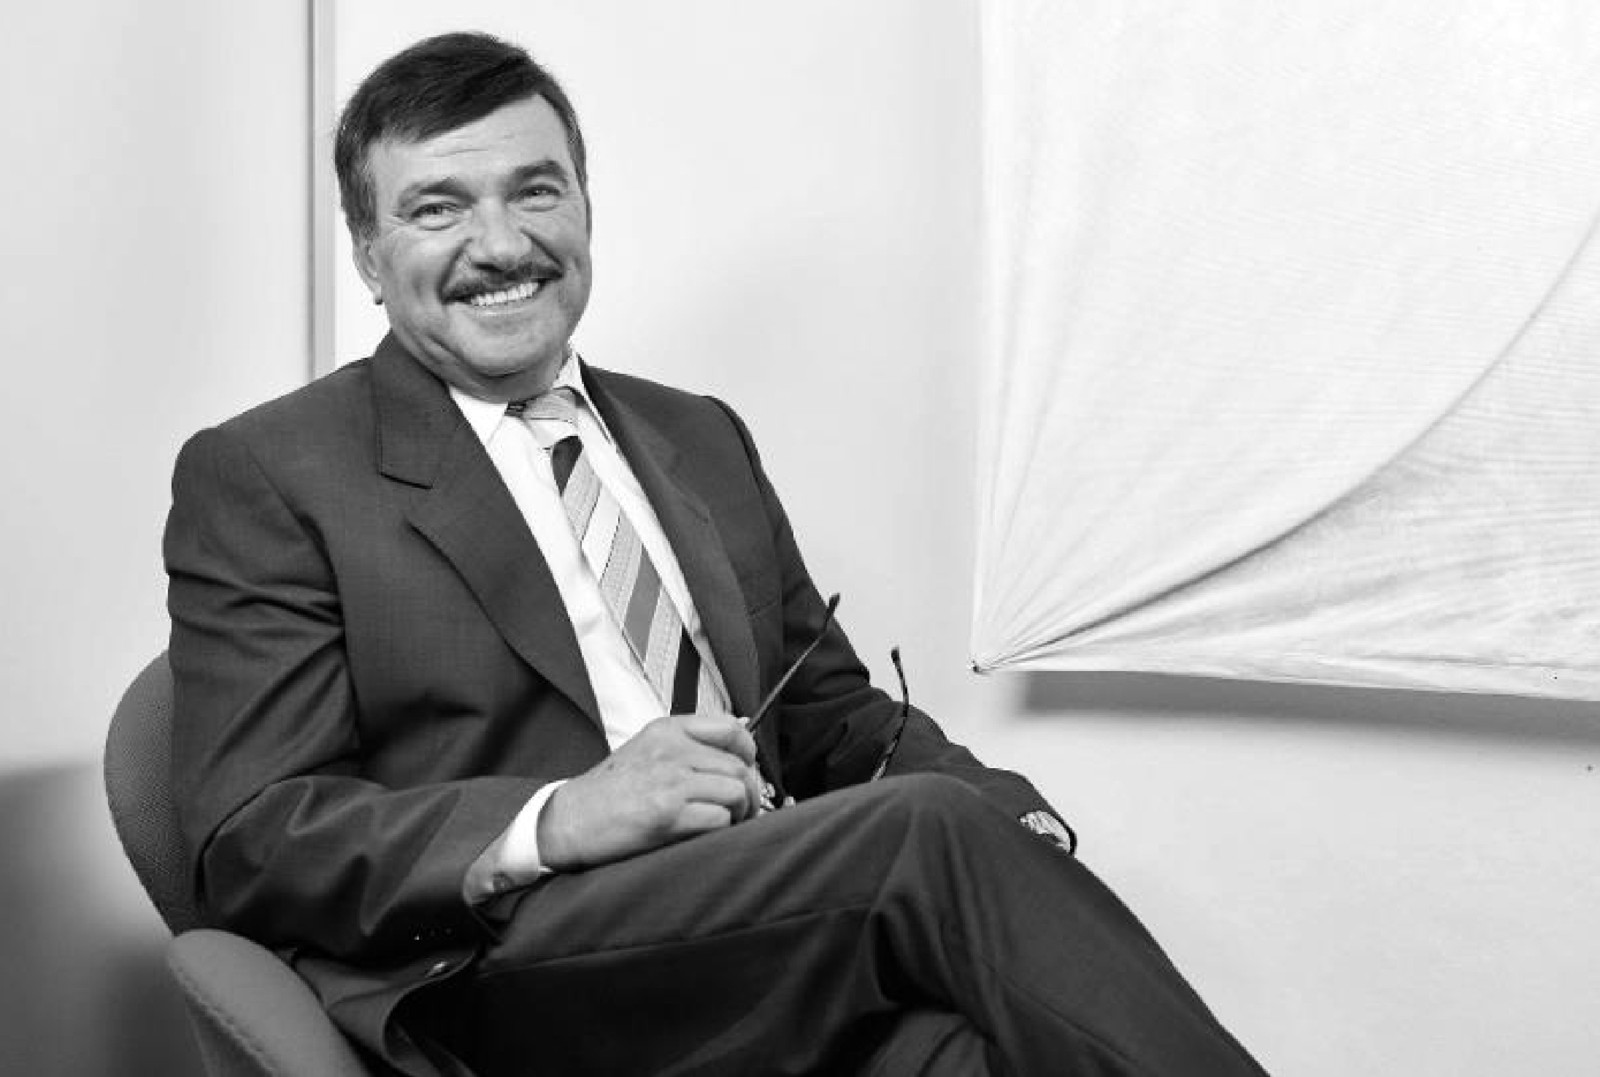 Die Kleenoil AG trauert um den verstorbenen Vorstandsvorsitzenden Milorad Krstić